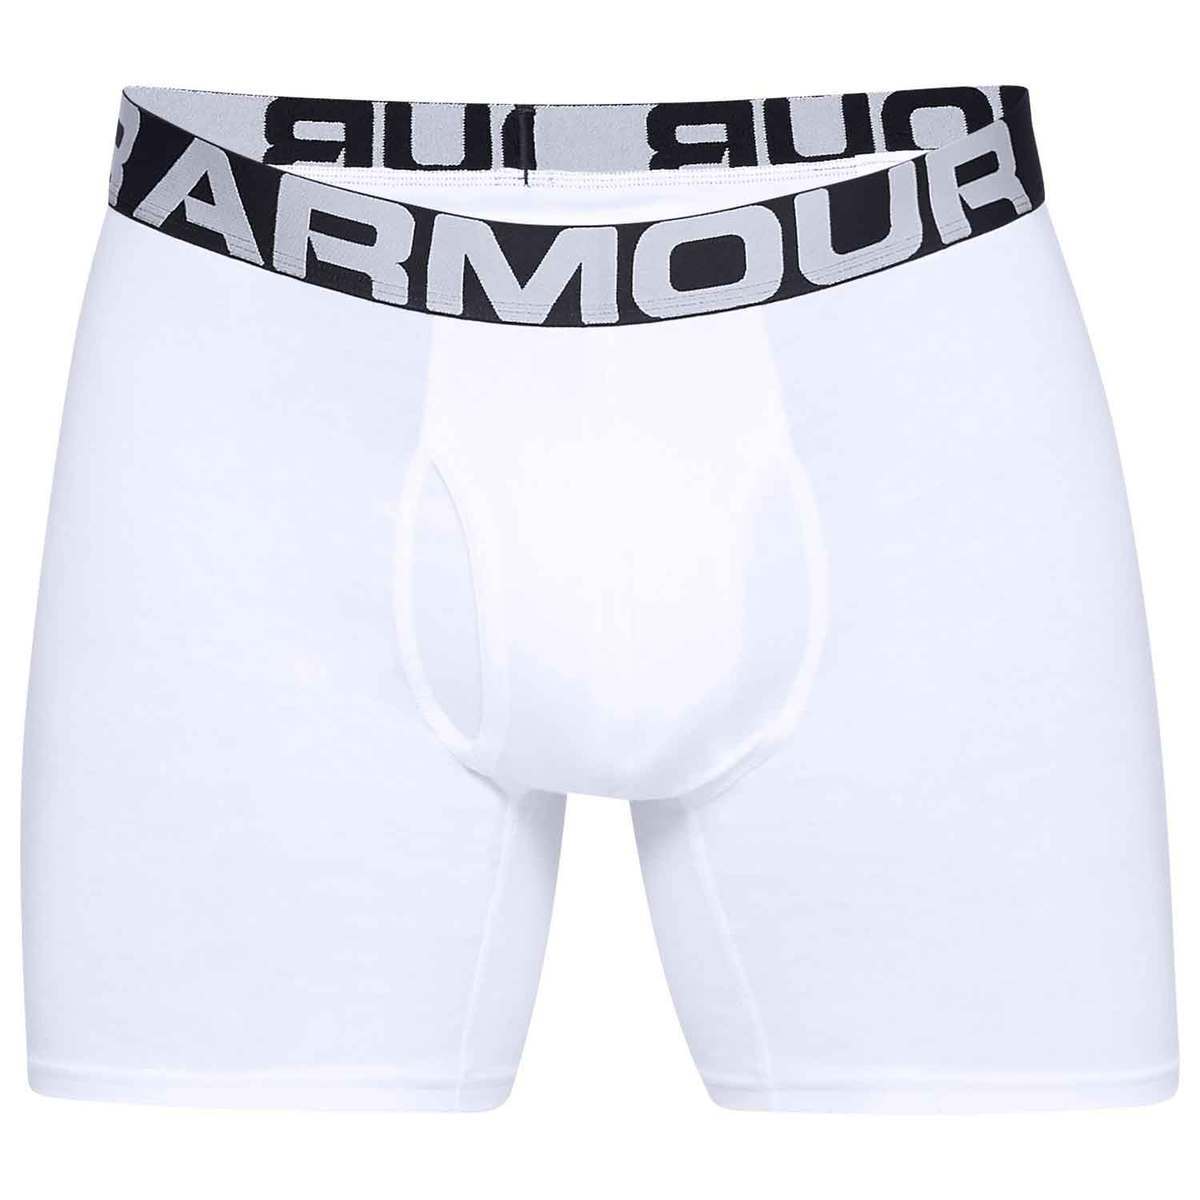 https://www.sportsmans.com/medias/under-armour-mens-boxerjock-underwear-white-xl-1509155-1.jpg?context=bWFzdGVyfGltYWdlc3w0OTMyMHxpbWFnZS9qcGVnfGltYWdlcy9oZmYvaDhhLzk3MjI0MTQzMDEyMTQuanBnfDk5NzE3ZjMzYTRkZTNiZmM2ZDI0NzA5OTUzZWFjNmY5MjllMzYwNTYwMWZiMmJiMmY2ODdiNWNkNTY0NjMxYzQ